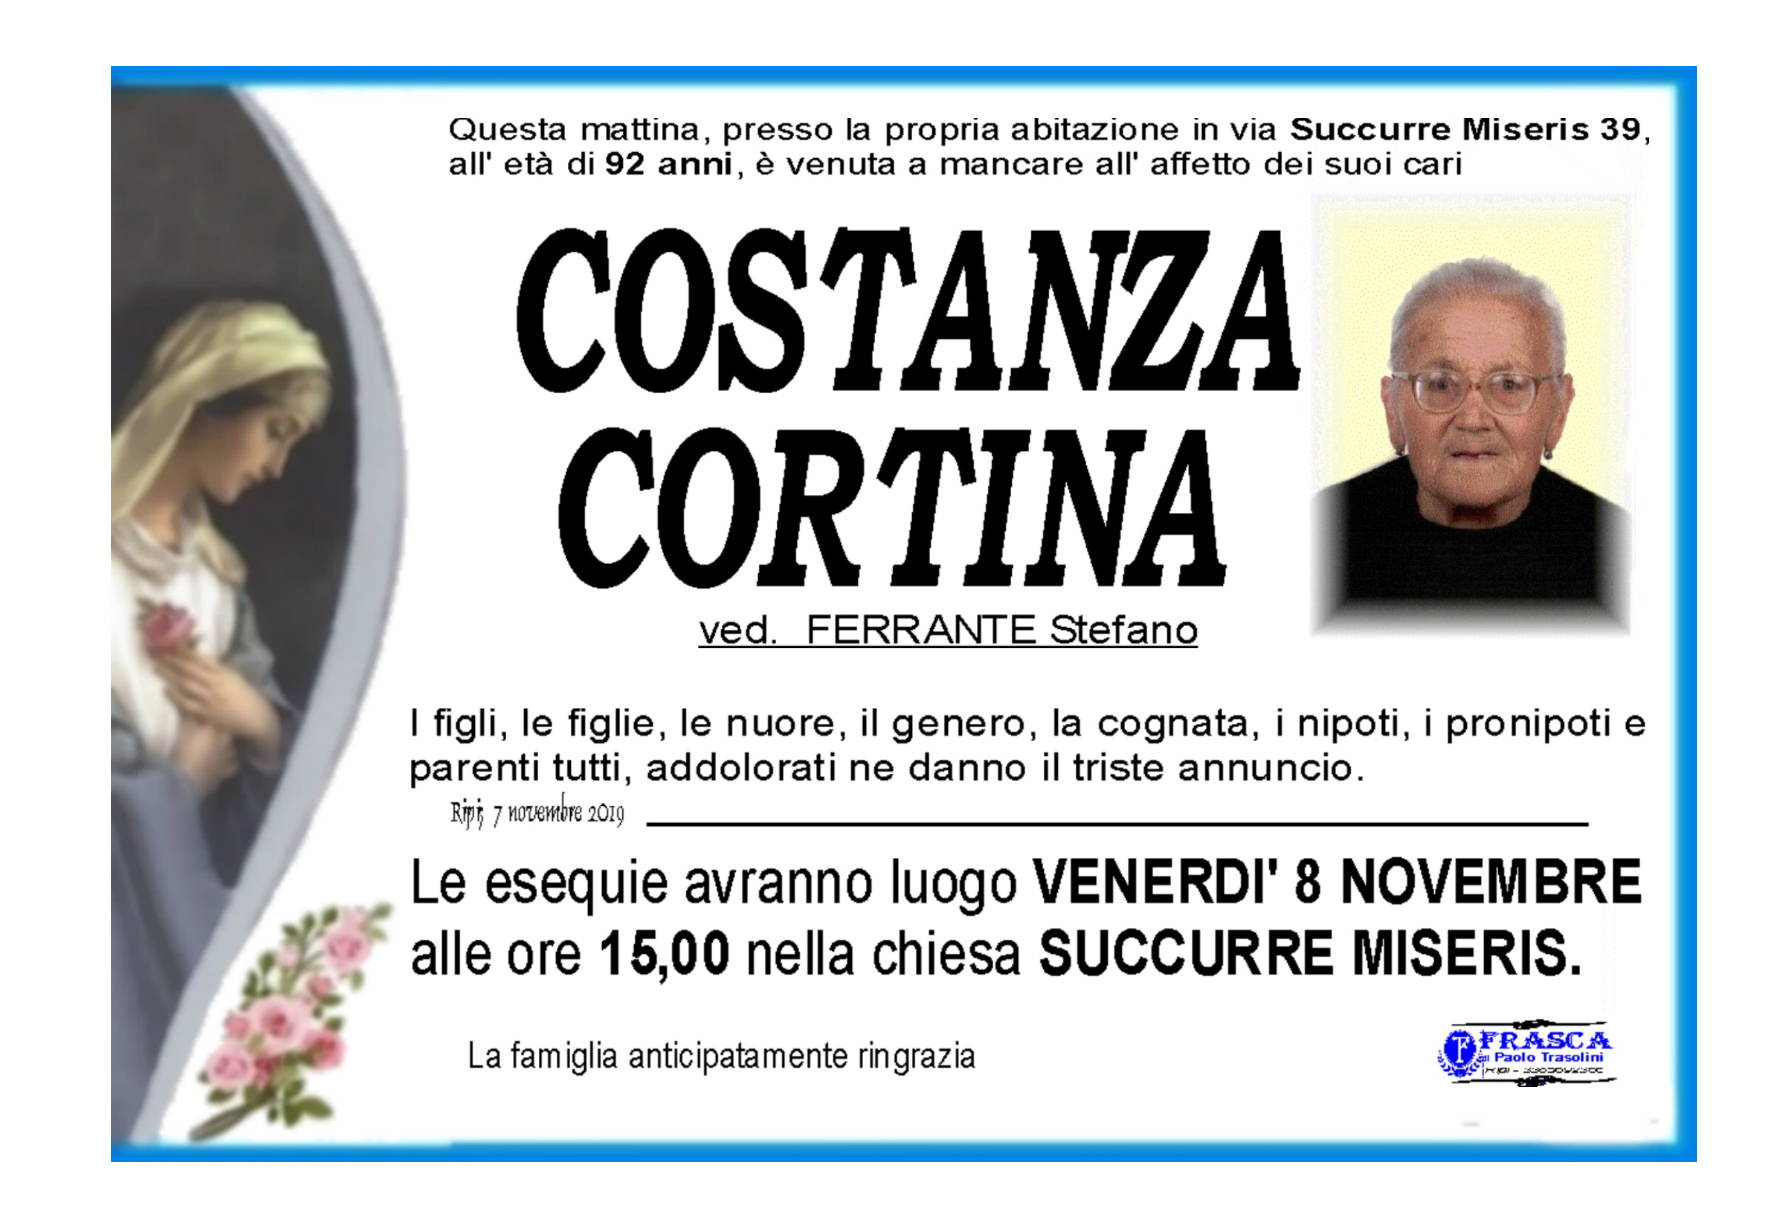 Costanza Cortina